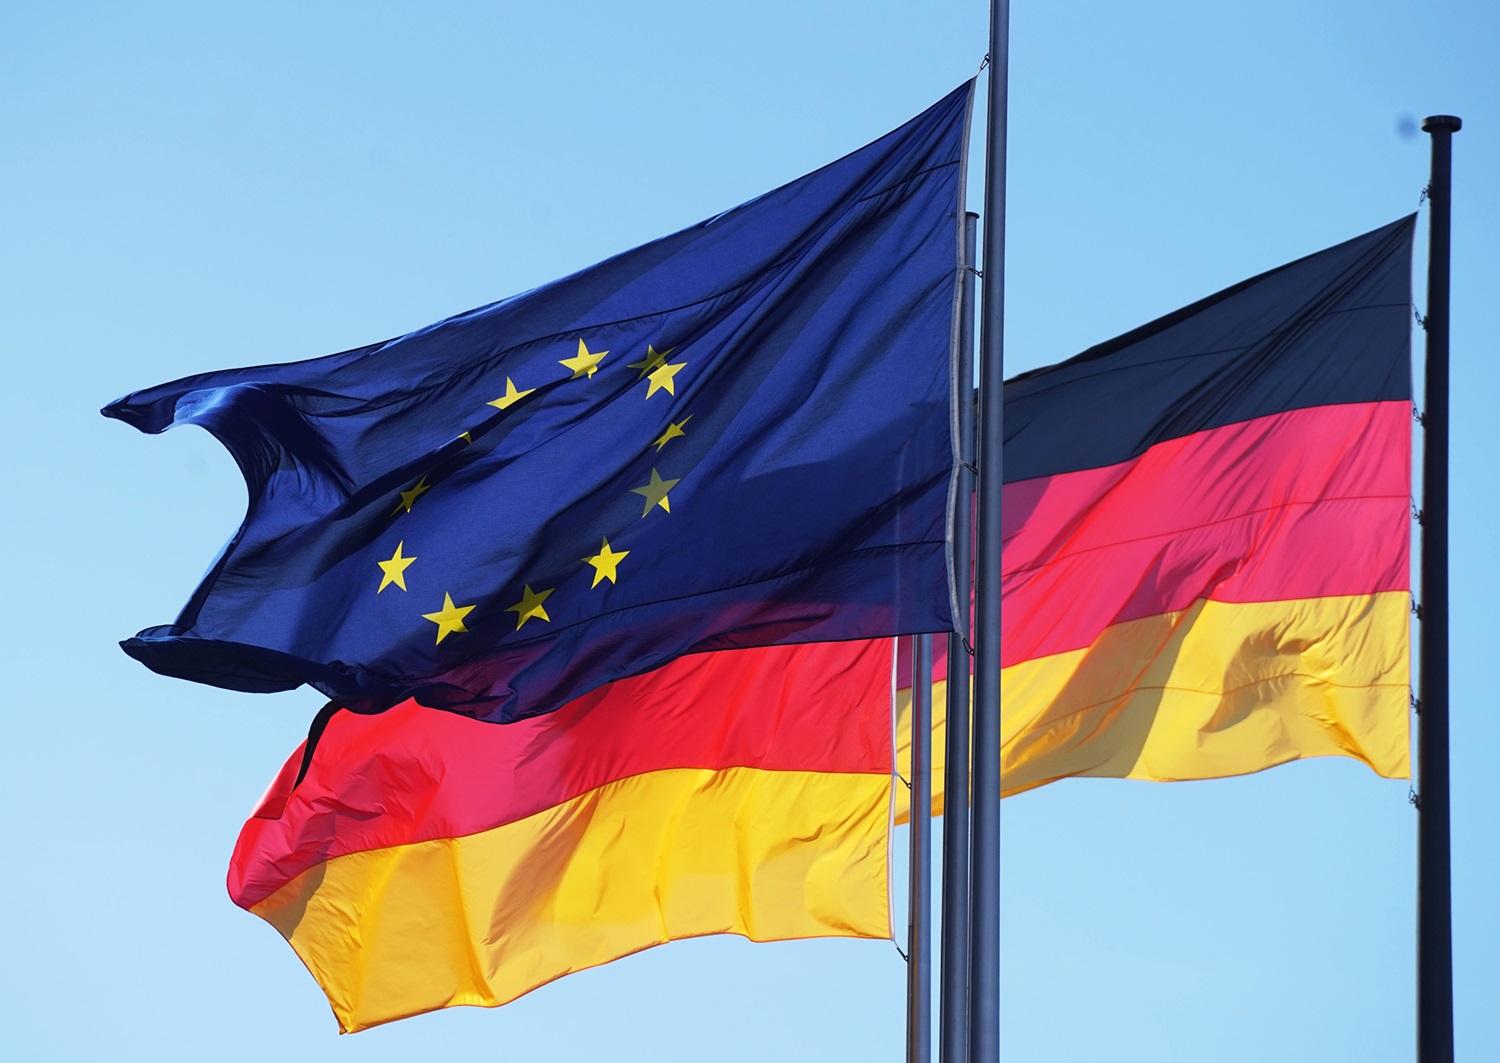 Germania alle elezioni europee: sondaggi ed esperti parlano di stabilità perduta e di nervosismo sui temi caldi della politica UE